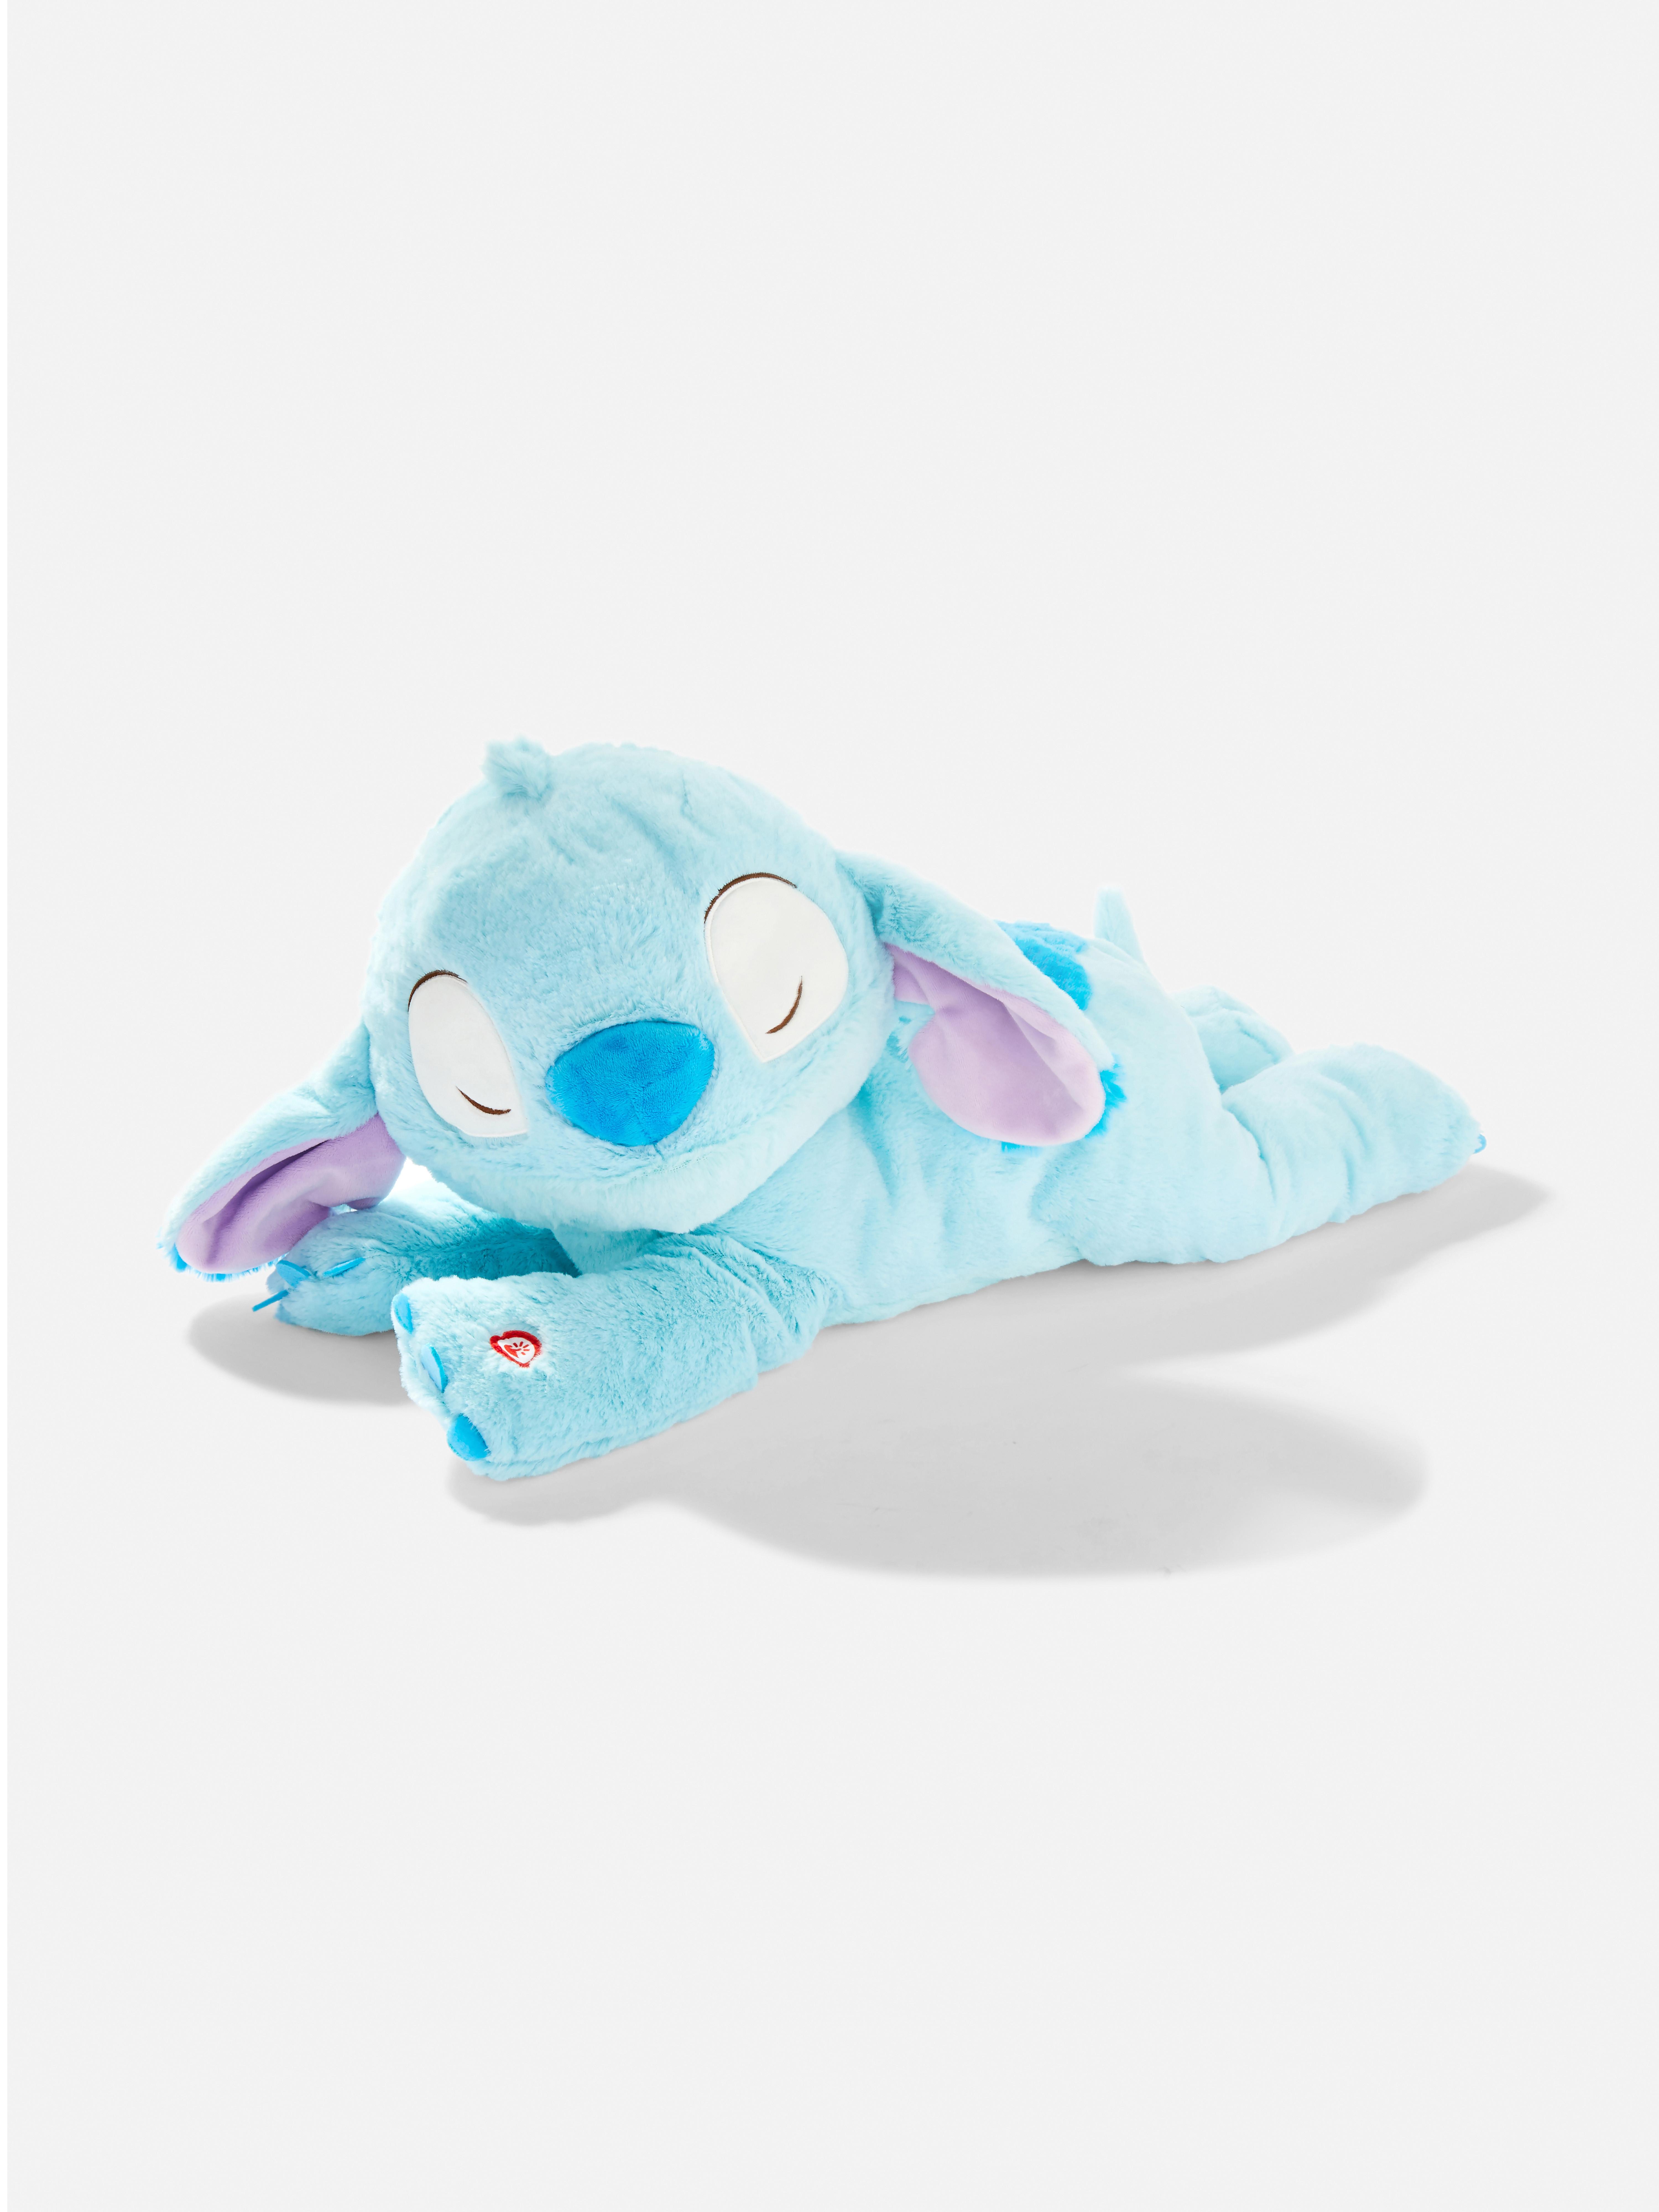 Disney’s Lilo & Stitch Sleeping Stitch Plush Toy